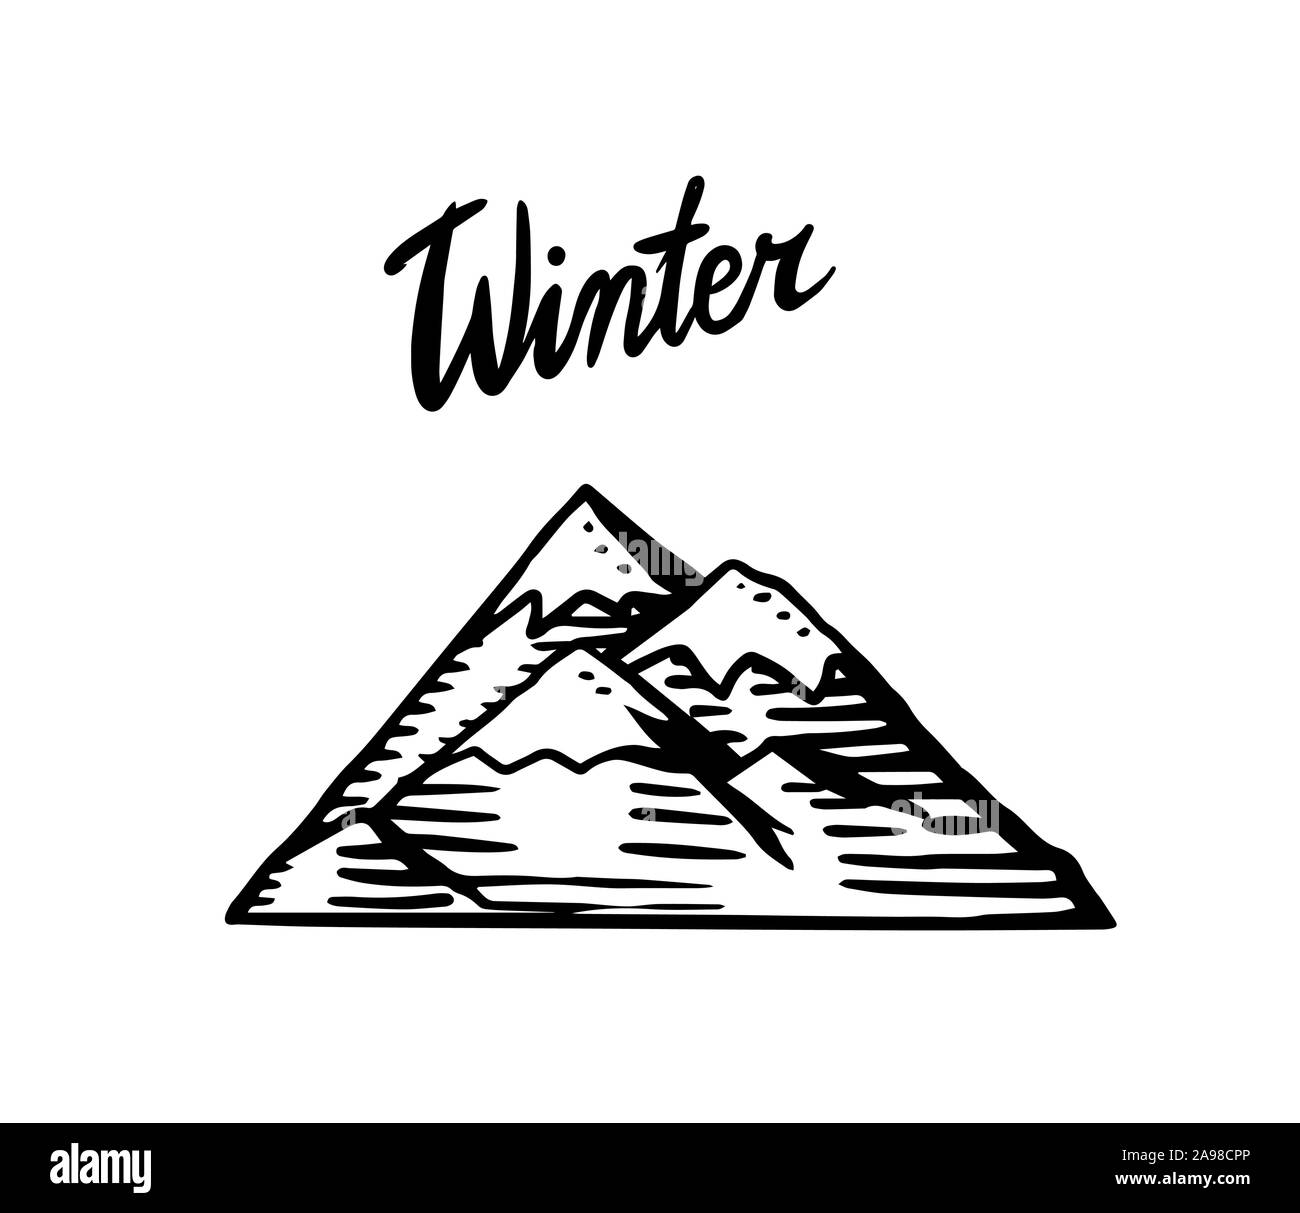 Il logo di montagna. Modello hill per etichette o emblemi. Spazzola Calligraphy Lettering inverno. Incisi disegnati a mano nel vecchio doodle vintage sketch. Illustrazione Vettoriale